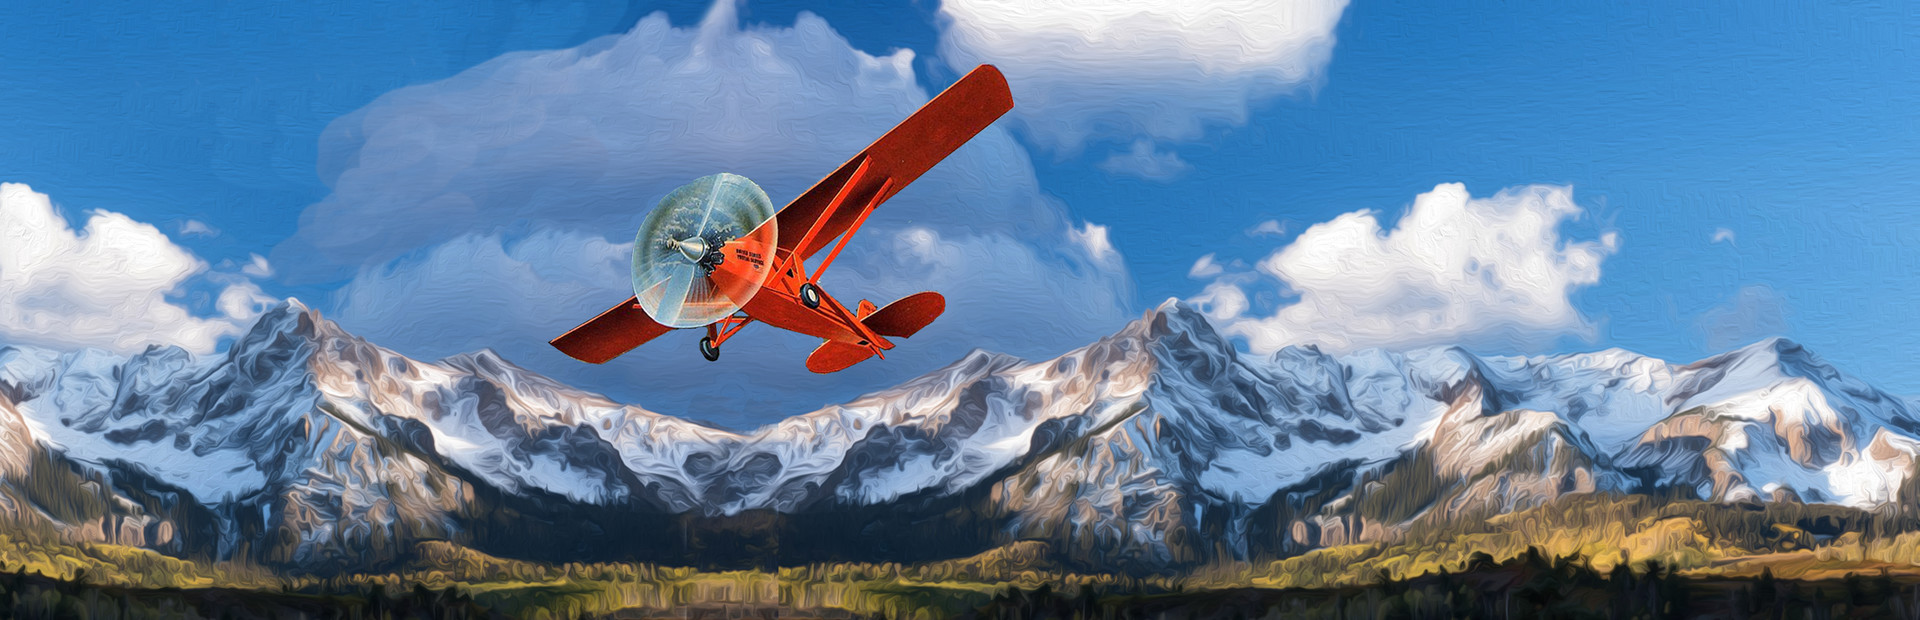 Solo Flight cover image